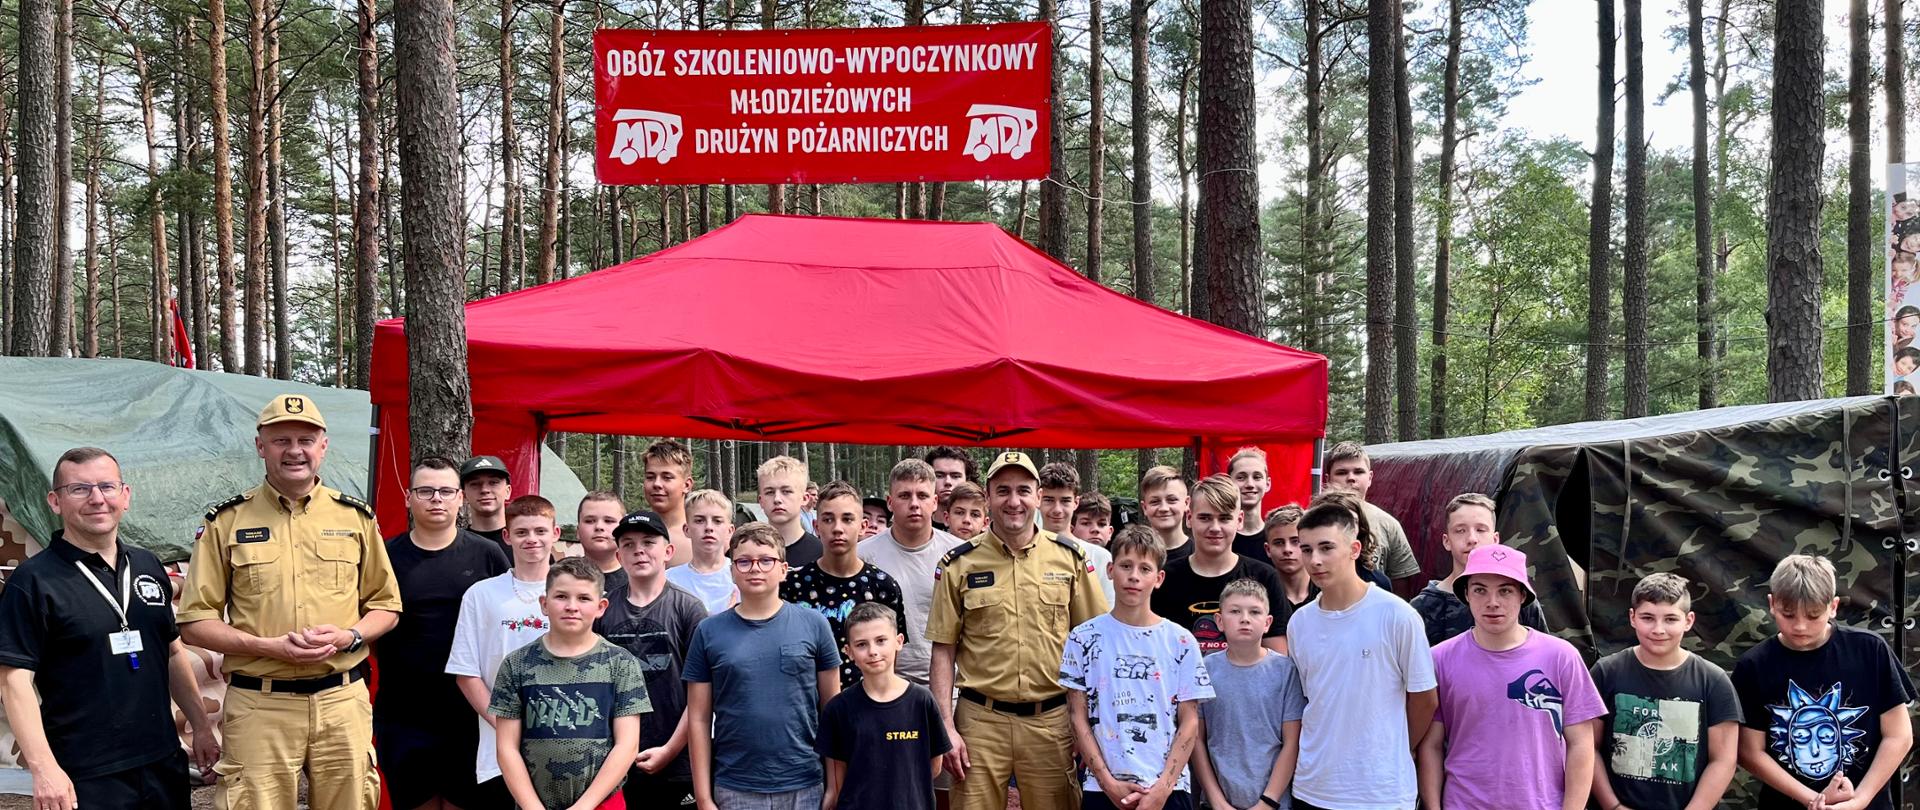 Pamiątkowe zdjęcie uczestników obozu i wizytujących gości. W tle czerwony namiot i baner obozu szkoleniowego, las i namioty uczestników